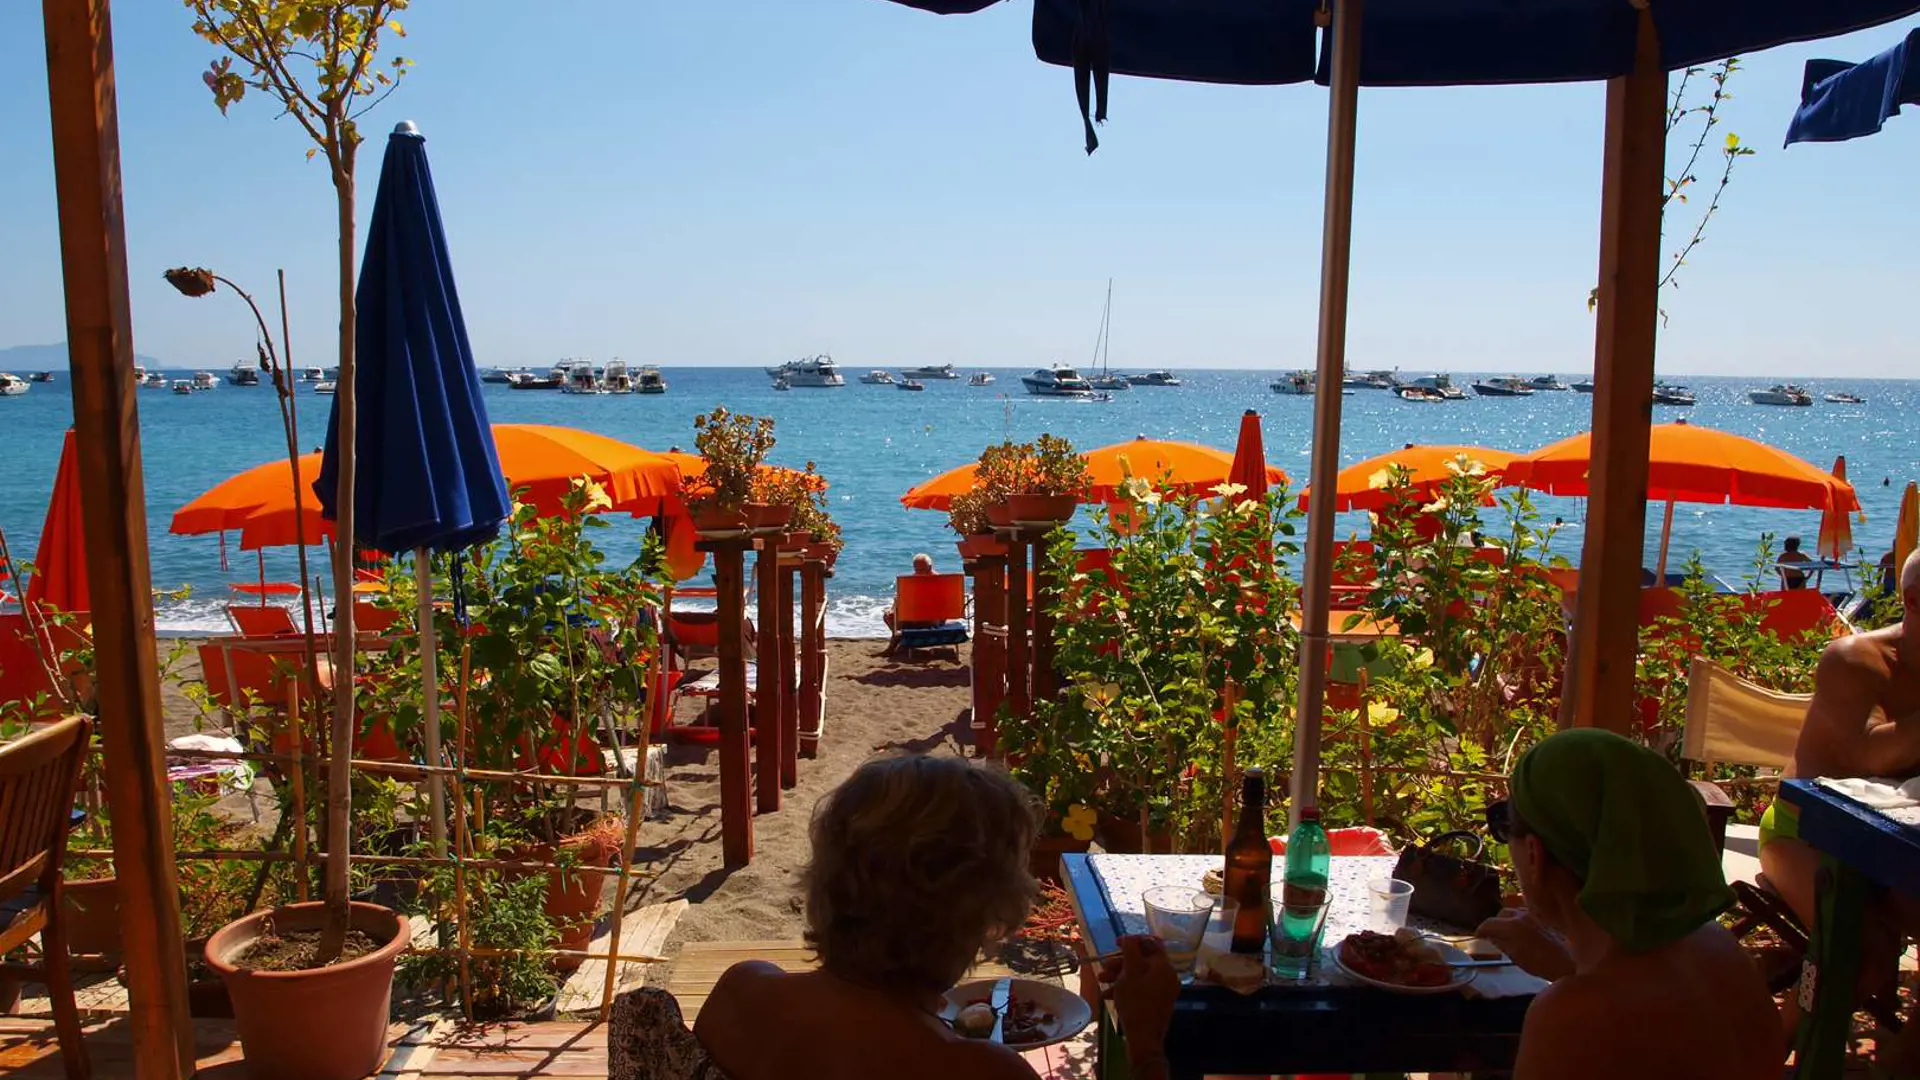 Hotel Villa Maria har en beach Club, hvor I kan leje solsenge og parasoller